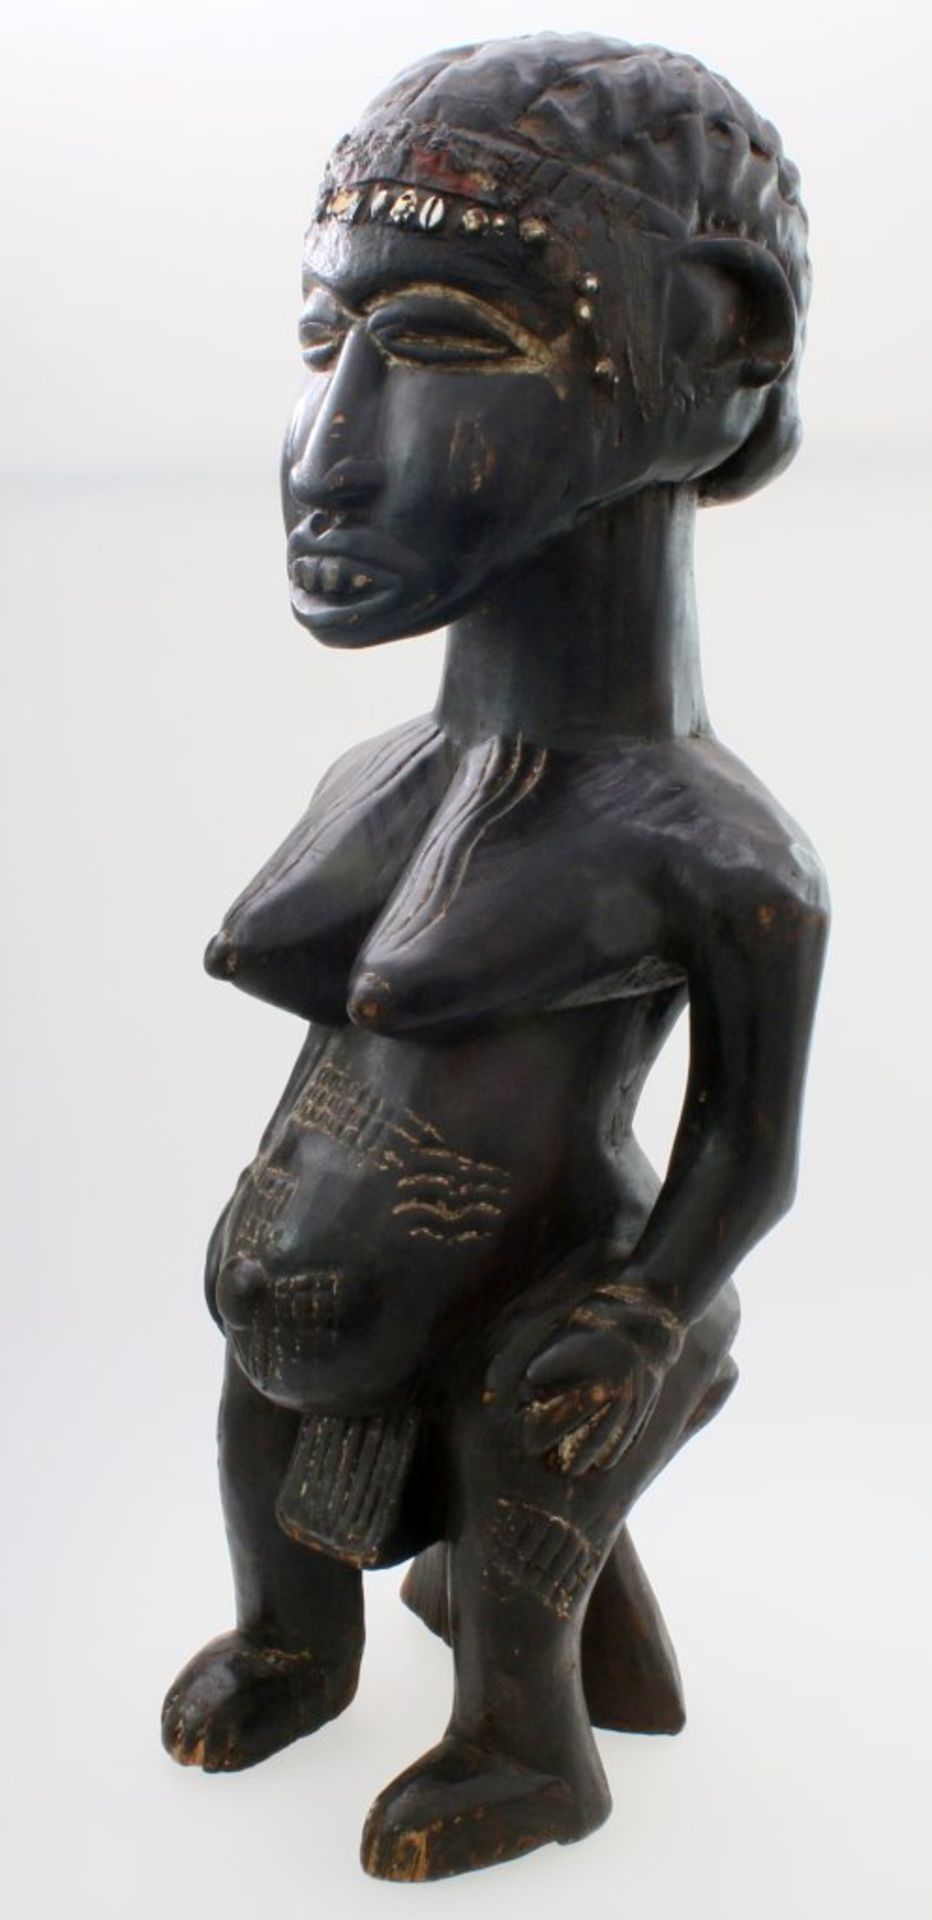 Westafrika - Große Ahnenfigur Schwarz / braun gefärbtes Tropenholz. Auf Stütze sitzende Figur, - Bild 2 aus 6